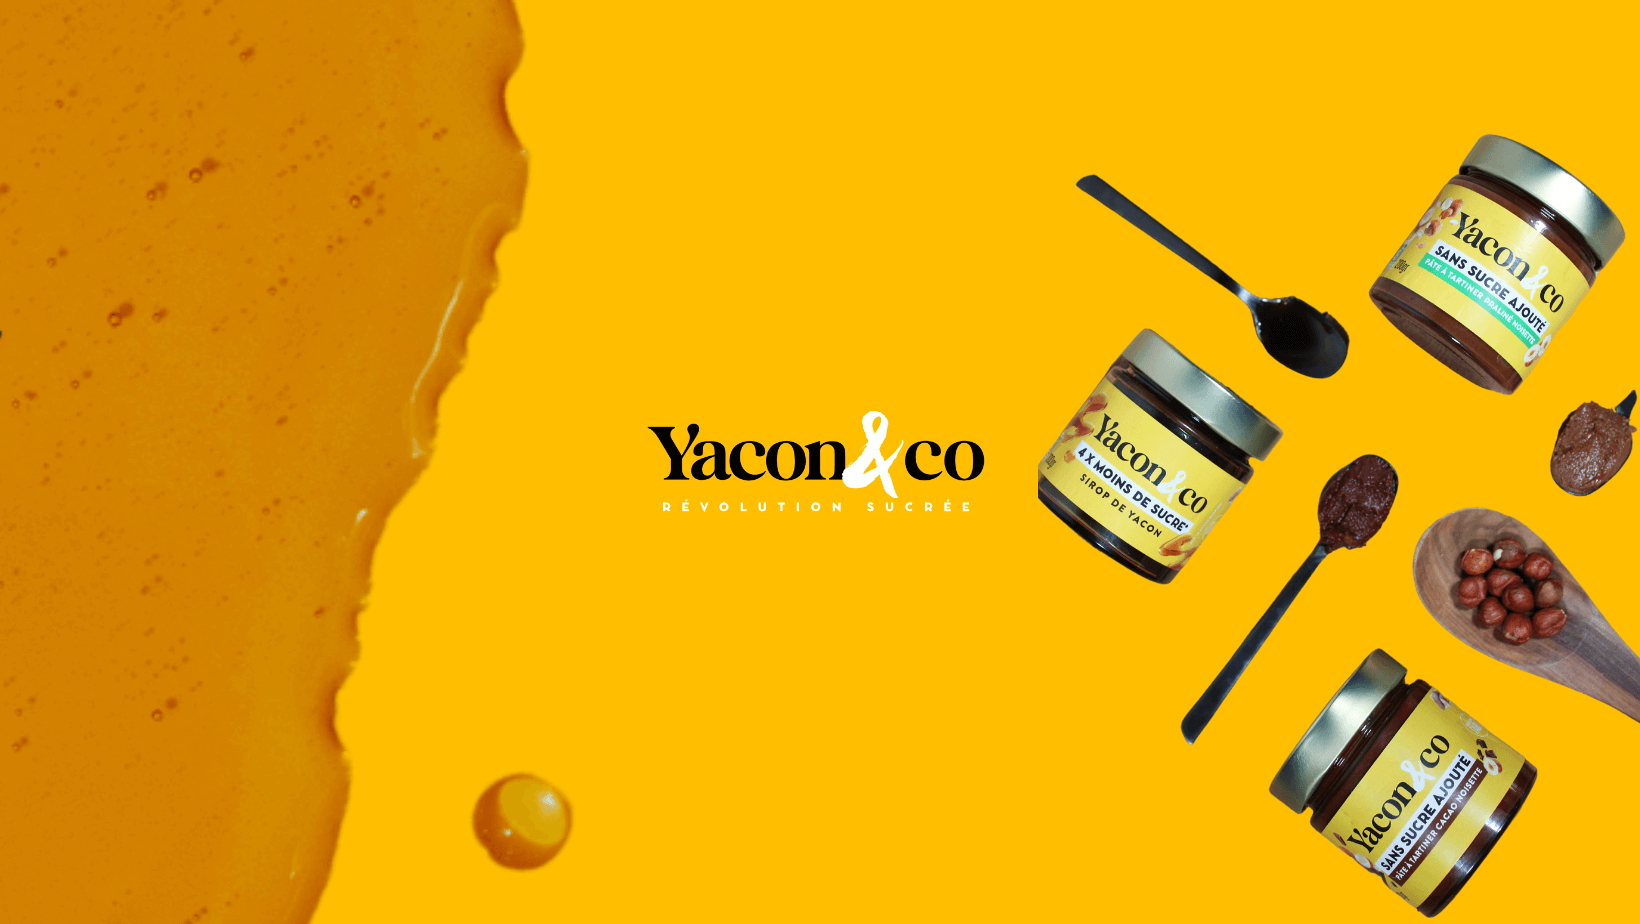 Yacon & Co veut maîtriser la production du sirop de yacon